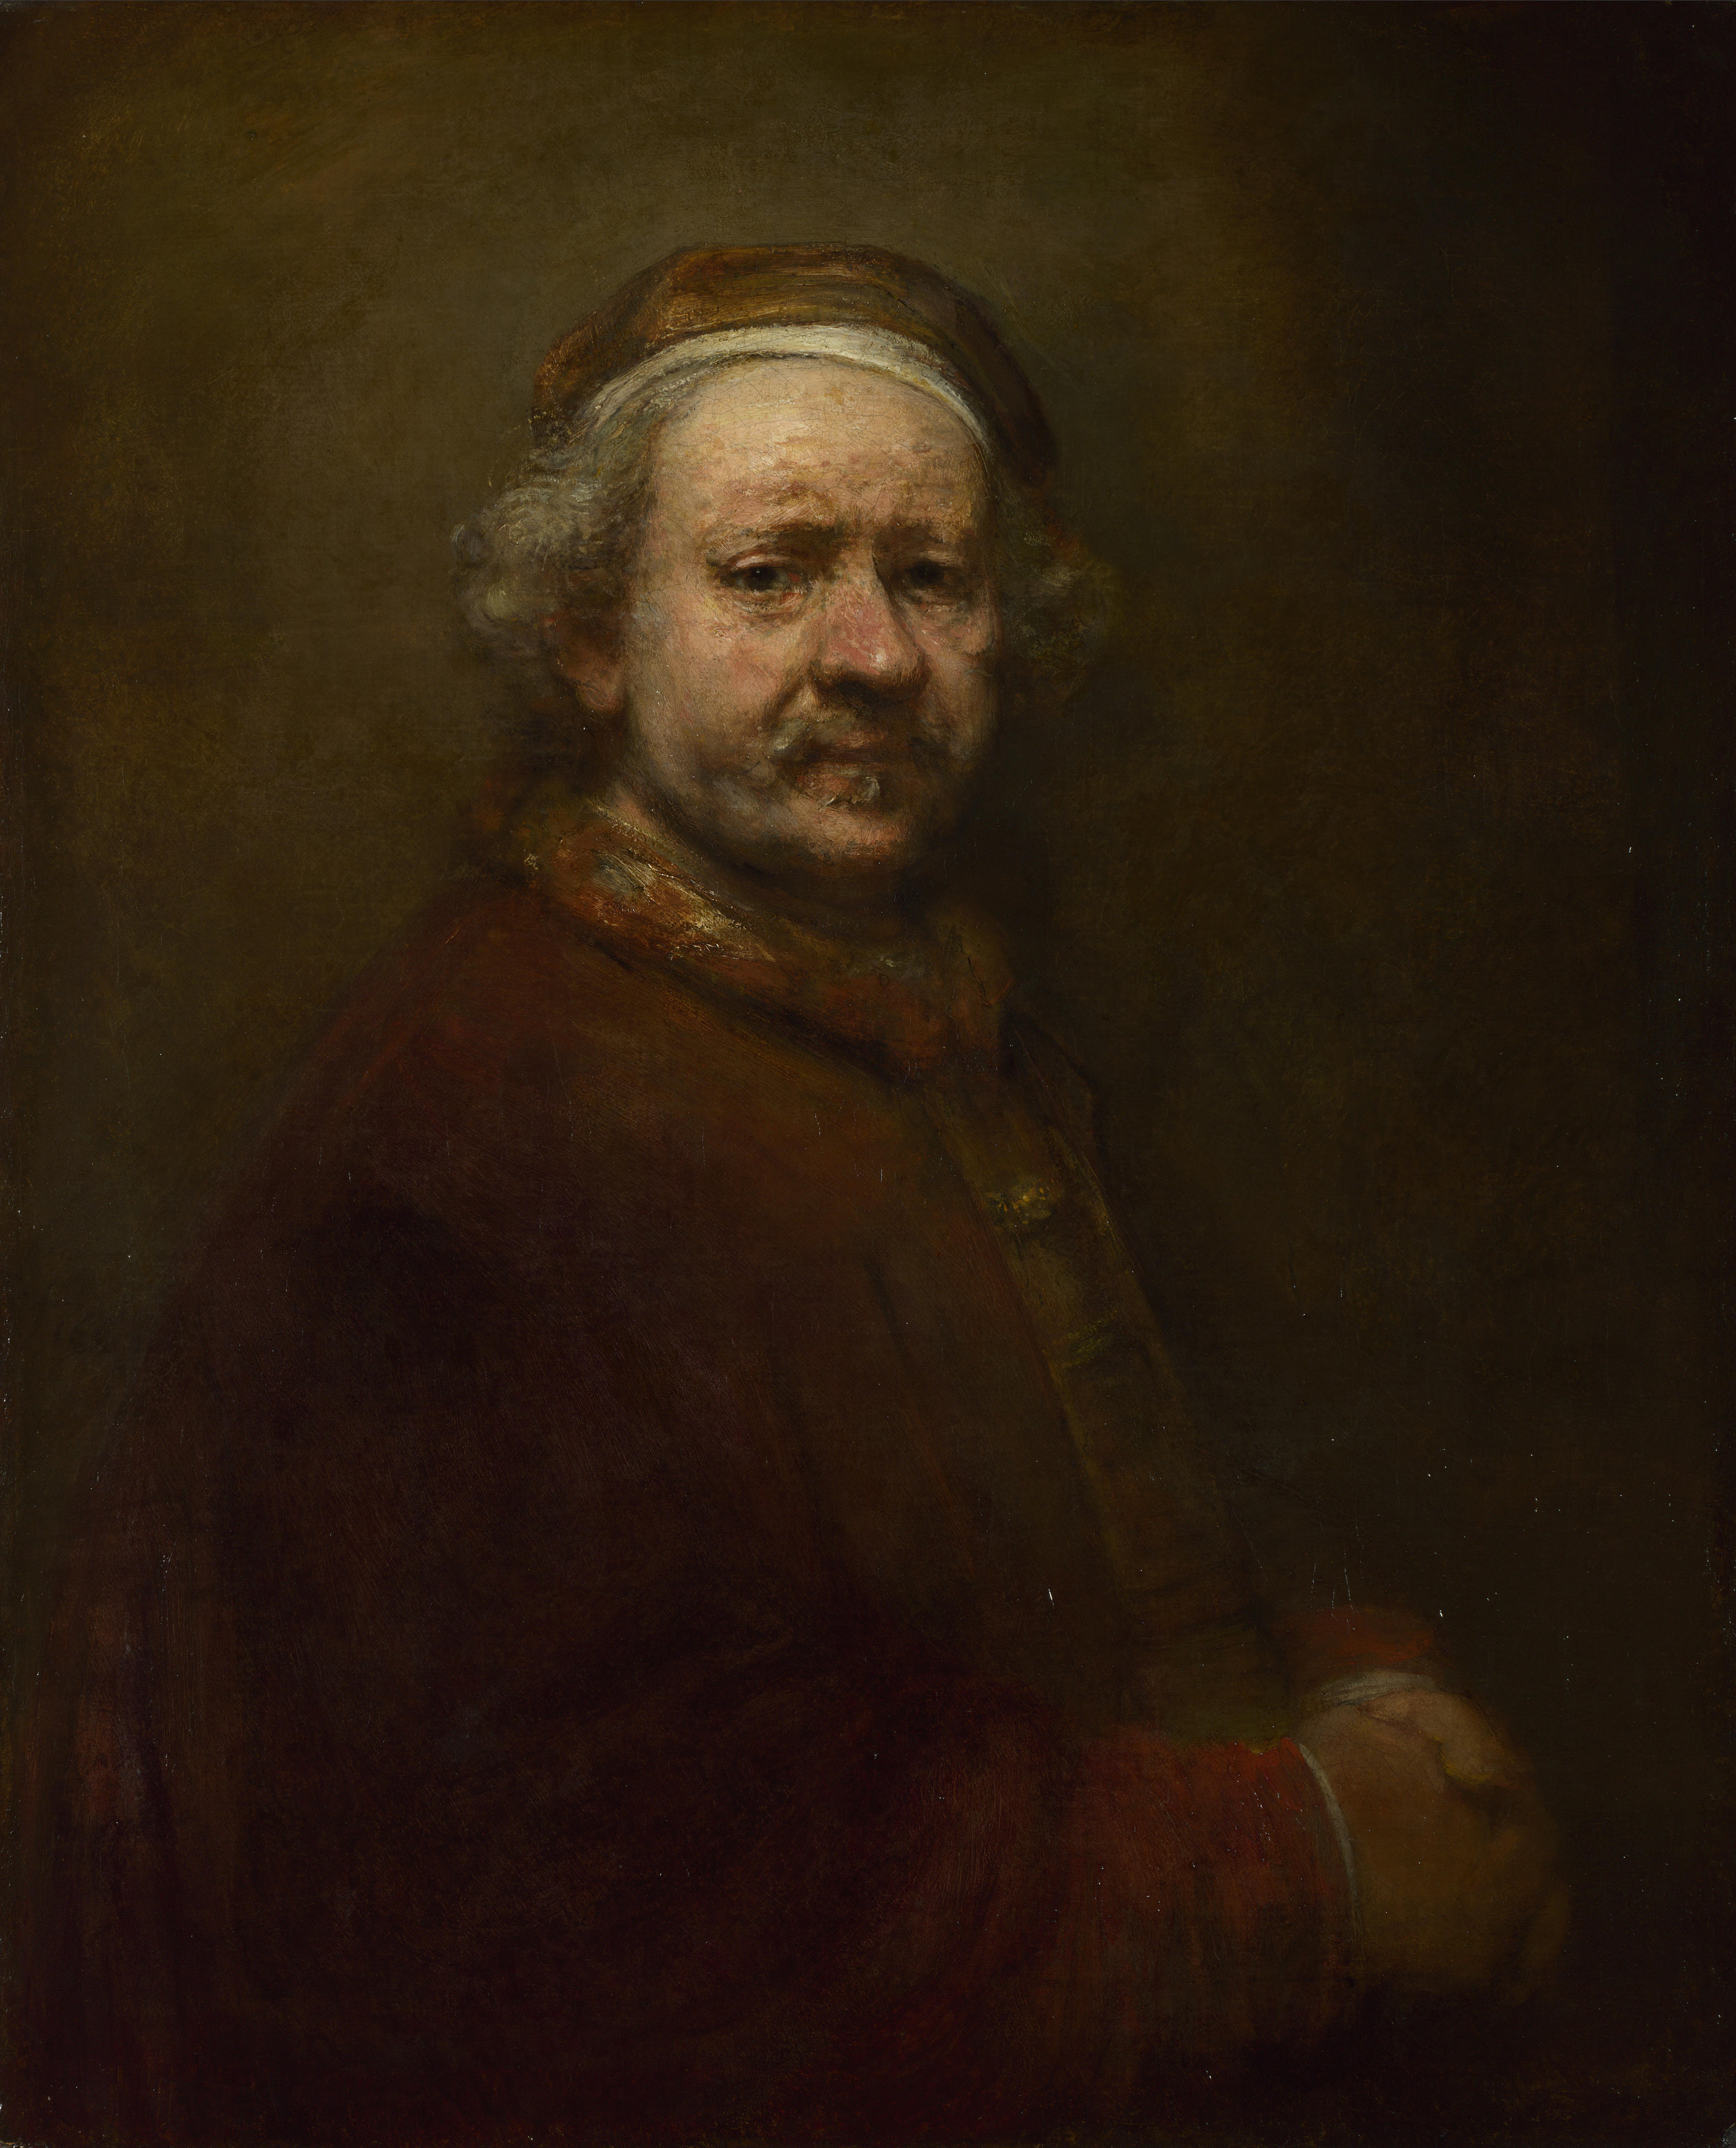 Autoportrait by Rembrandt van Rijn - 1669 - 86 x 70.5 cm 